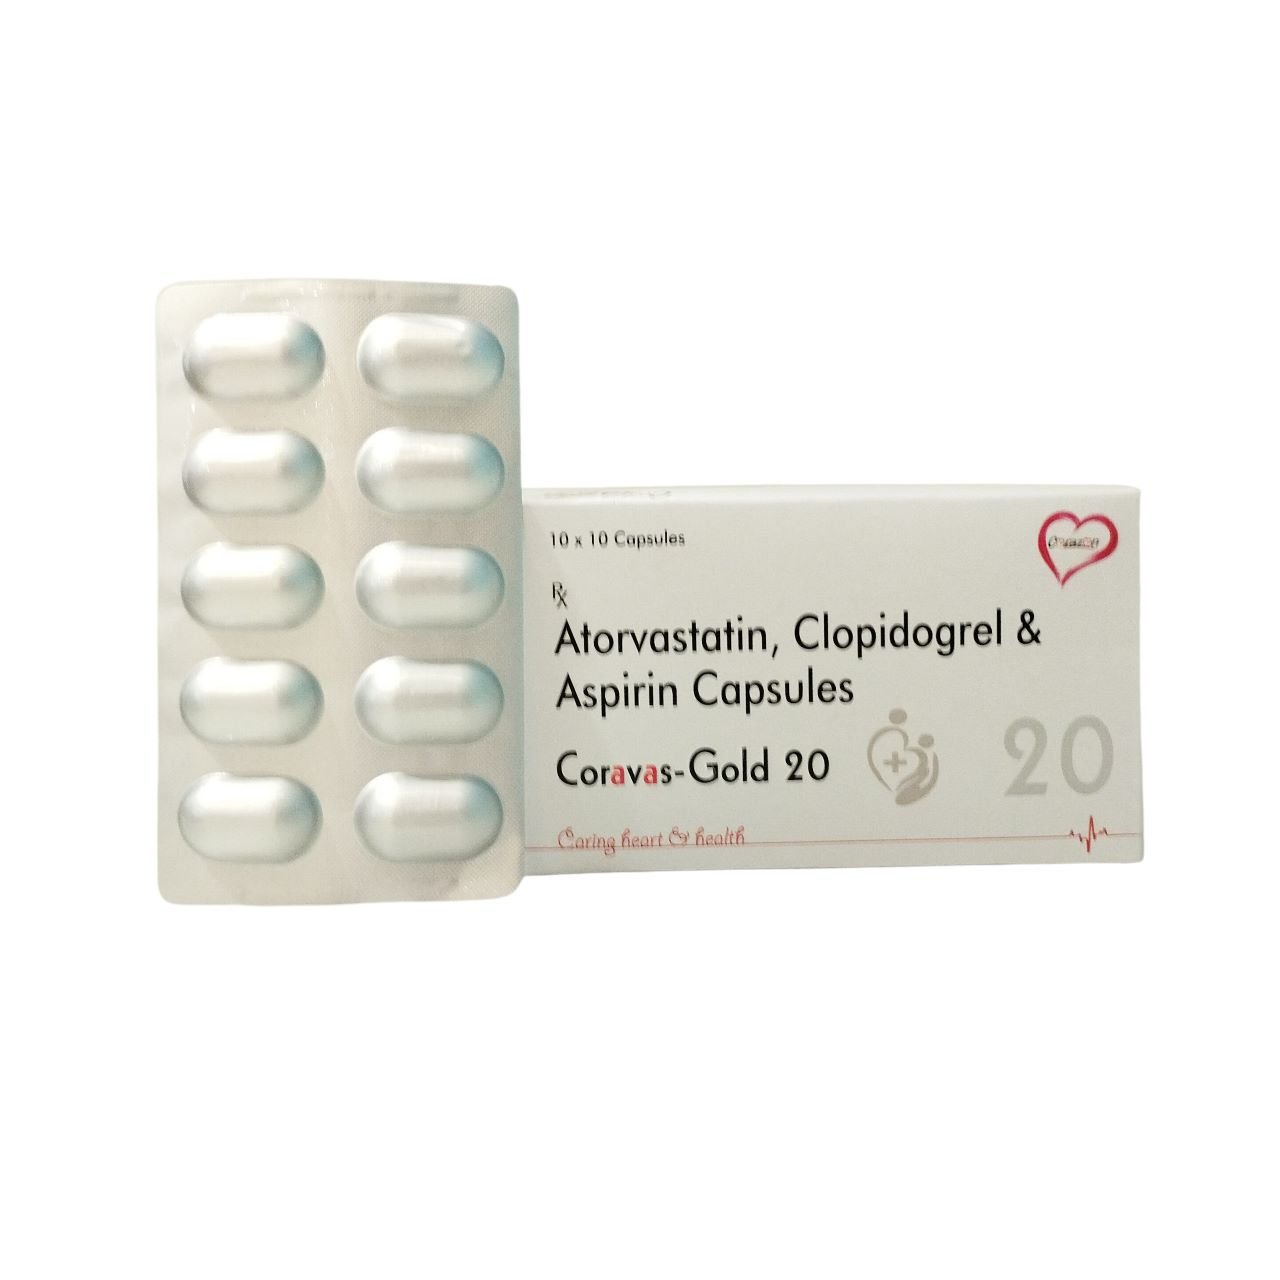 Atorvastatin, Clopidogrel and Aspirin Capsules